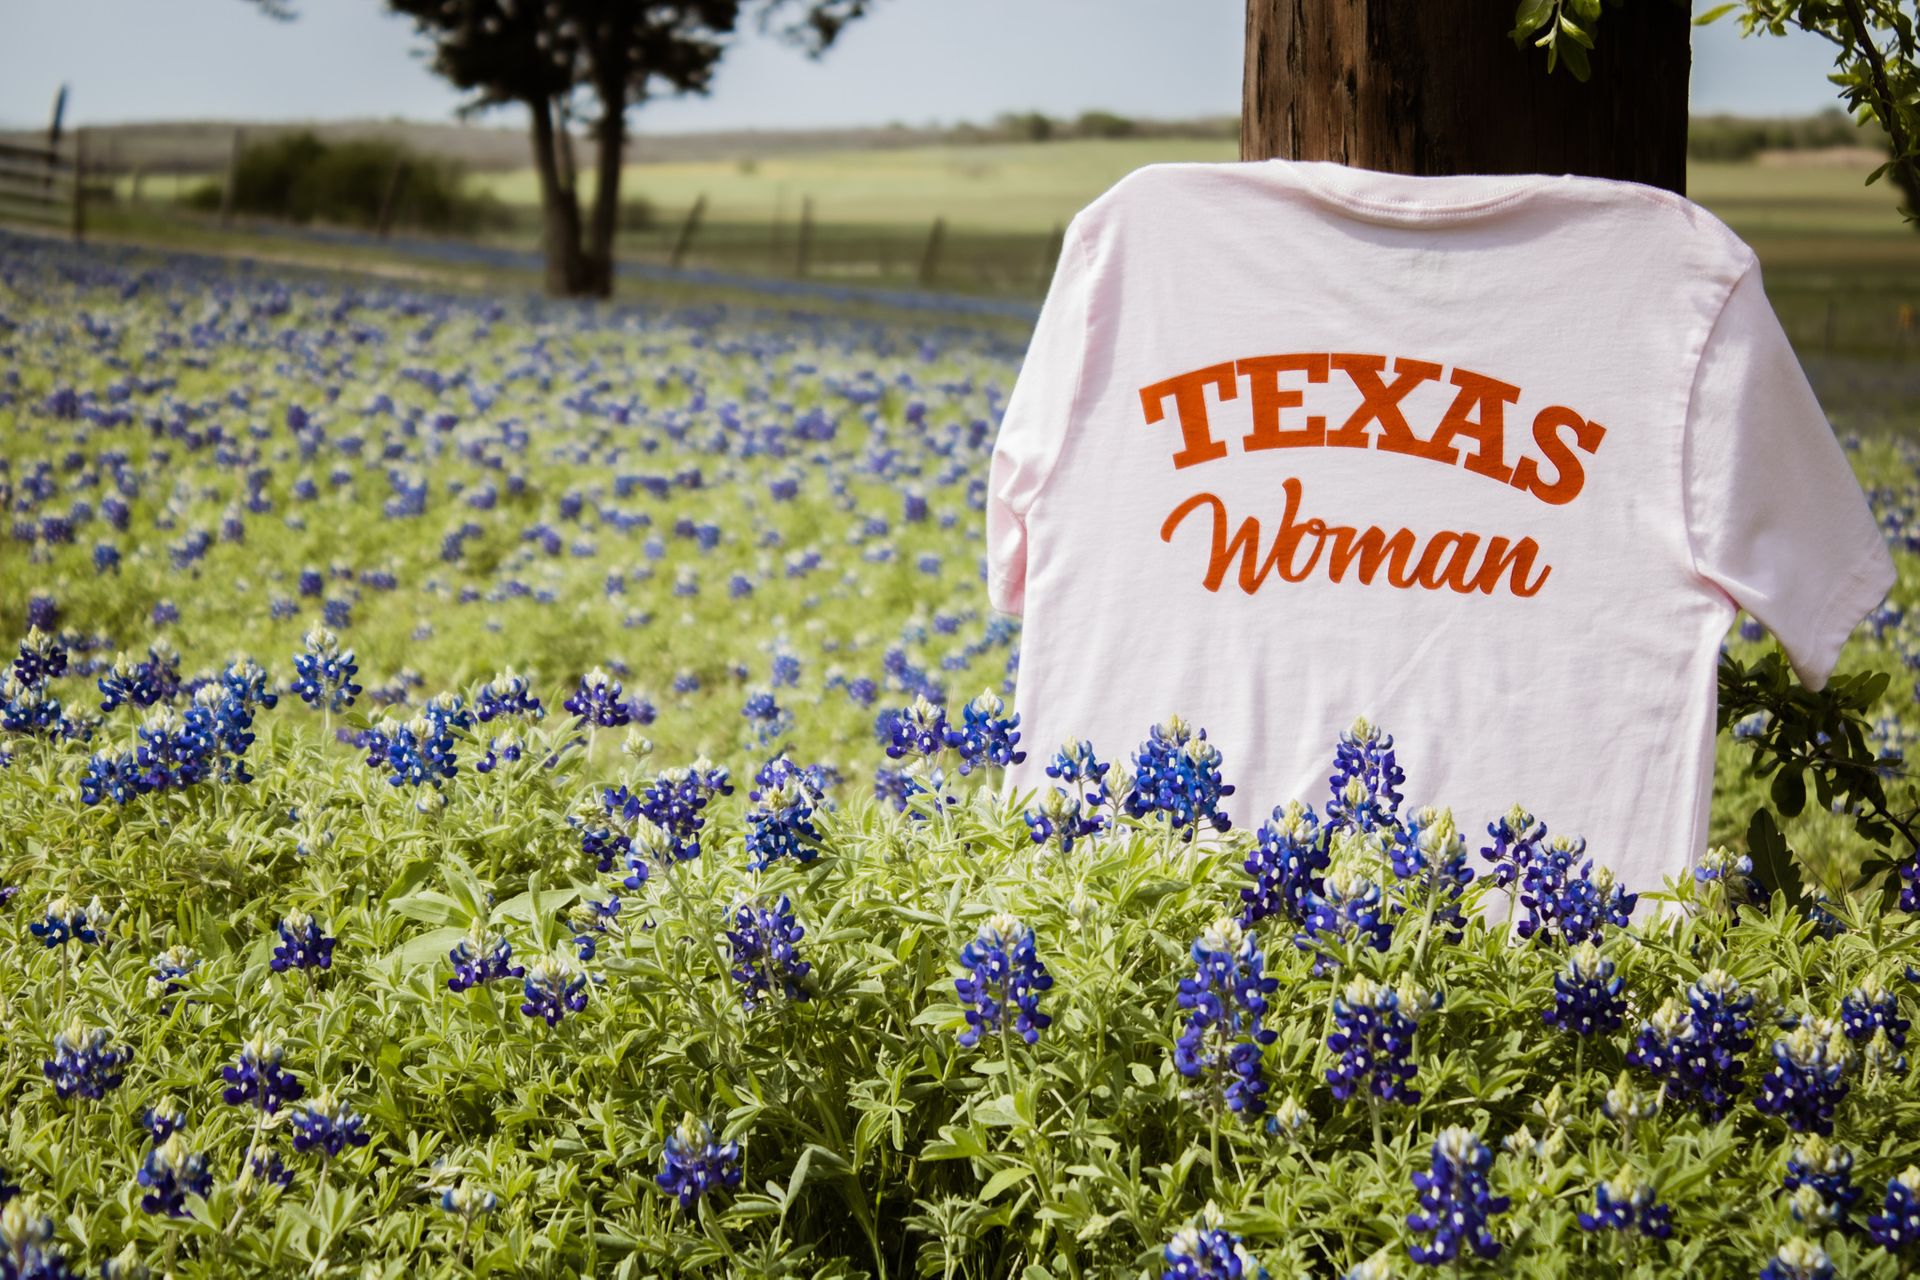 Texas woman - Texas state